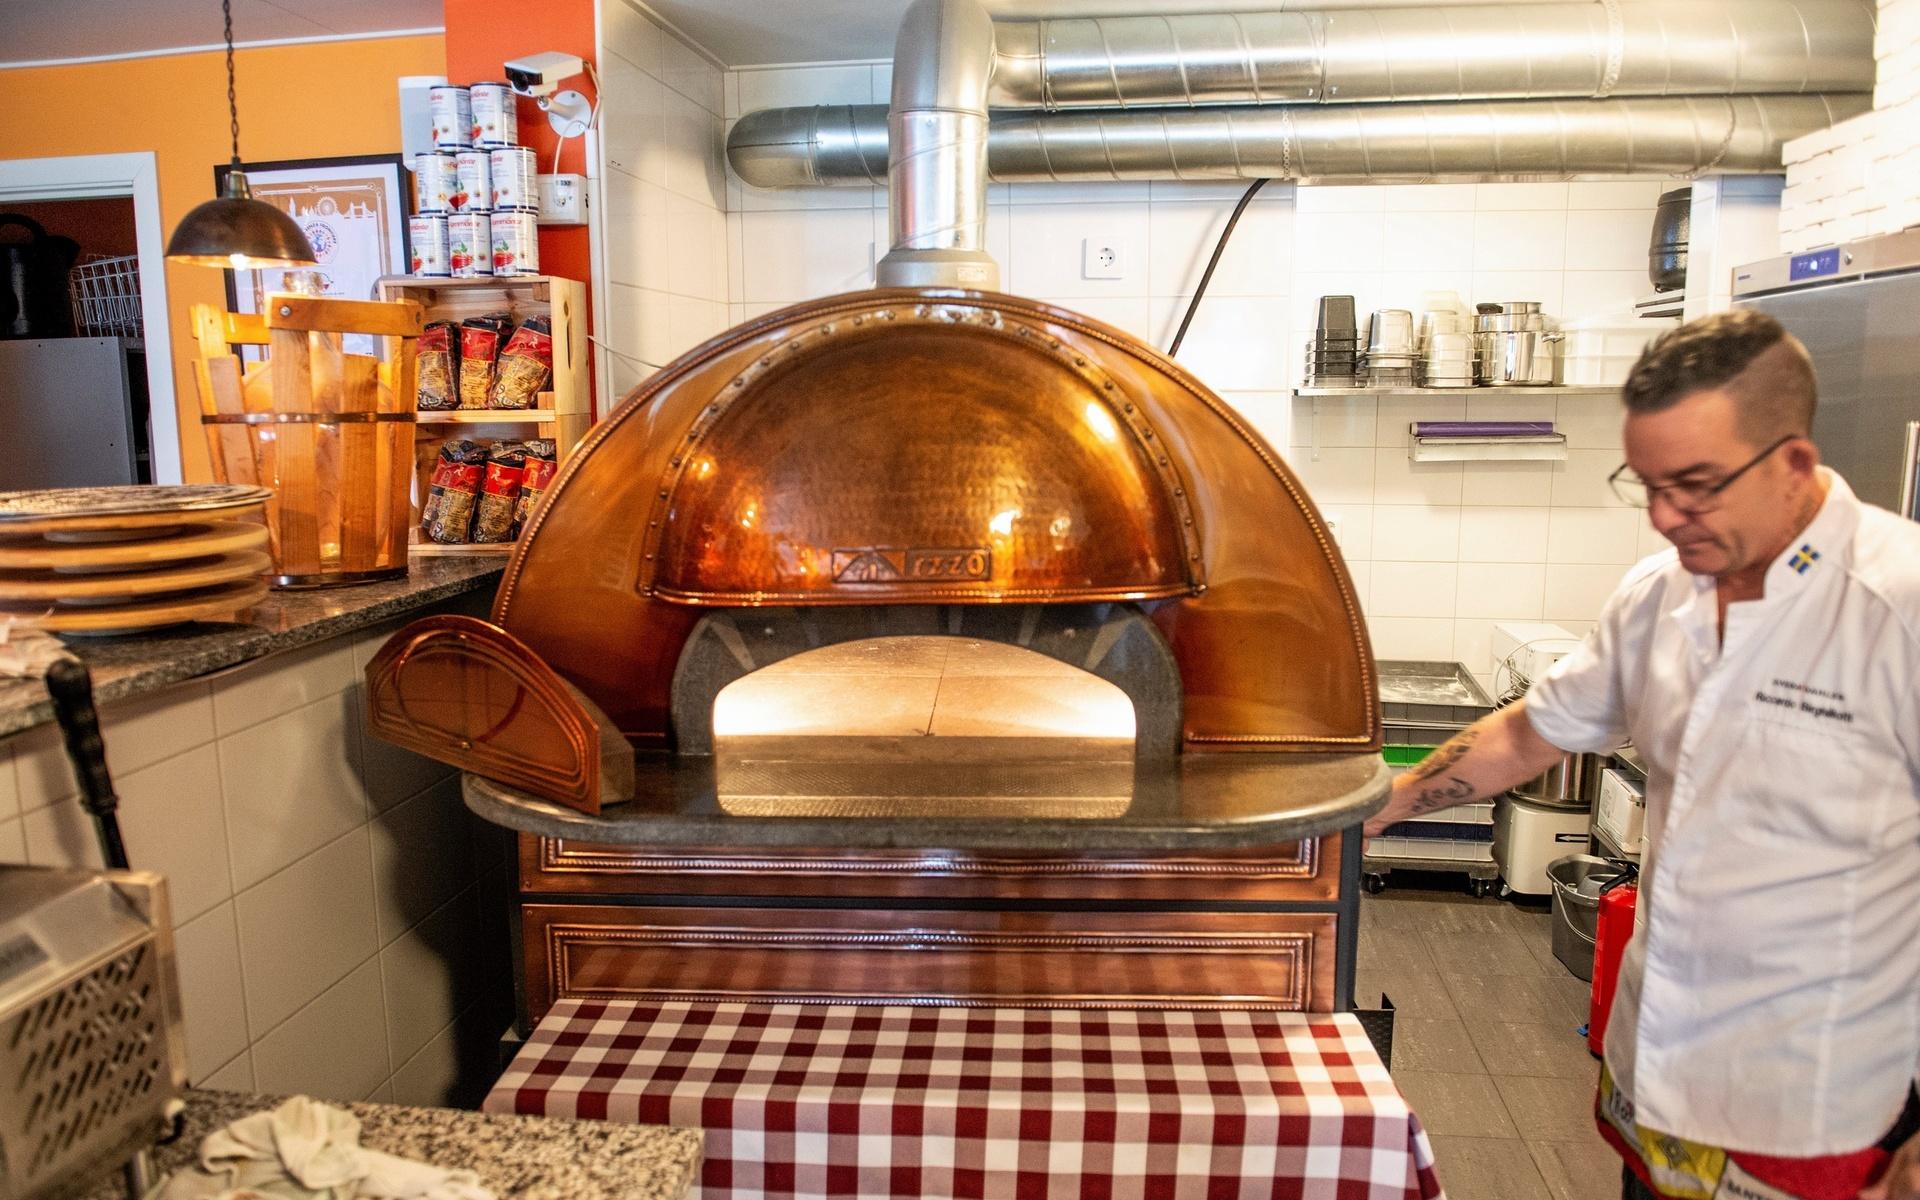 Här är ugnen som blir 500 grader varm och krävs för att kunna göra äkta napolitanska pizzor.